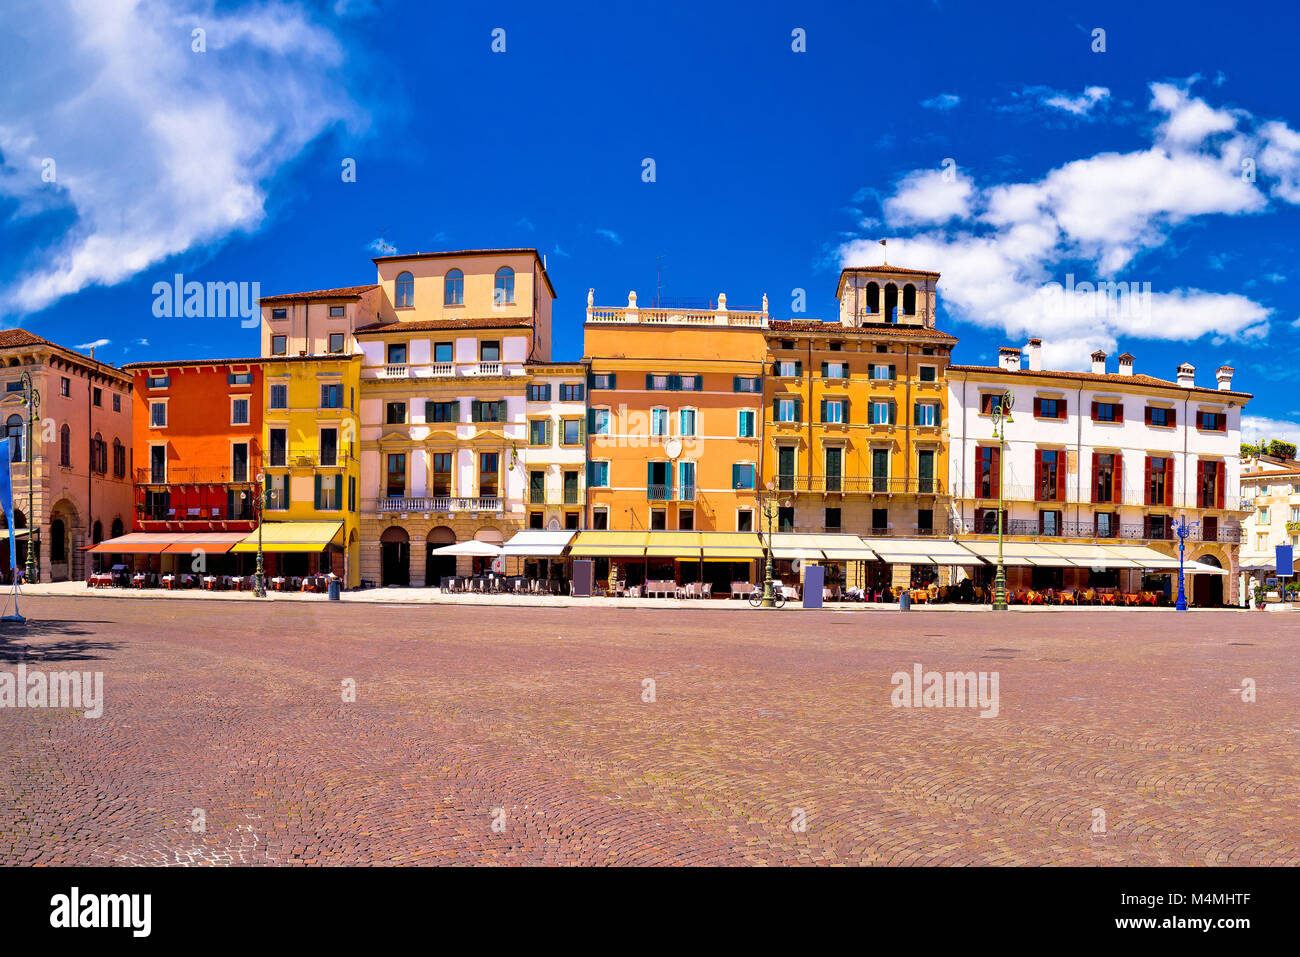 Piazza Bra square in Verona colorful view, landmark in Veneto region of Italy Stock Photo